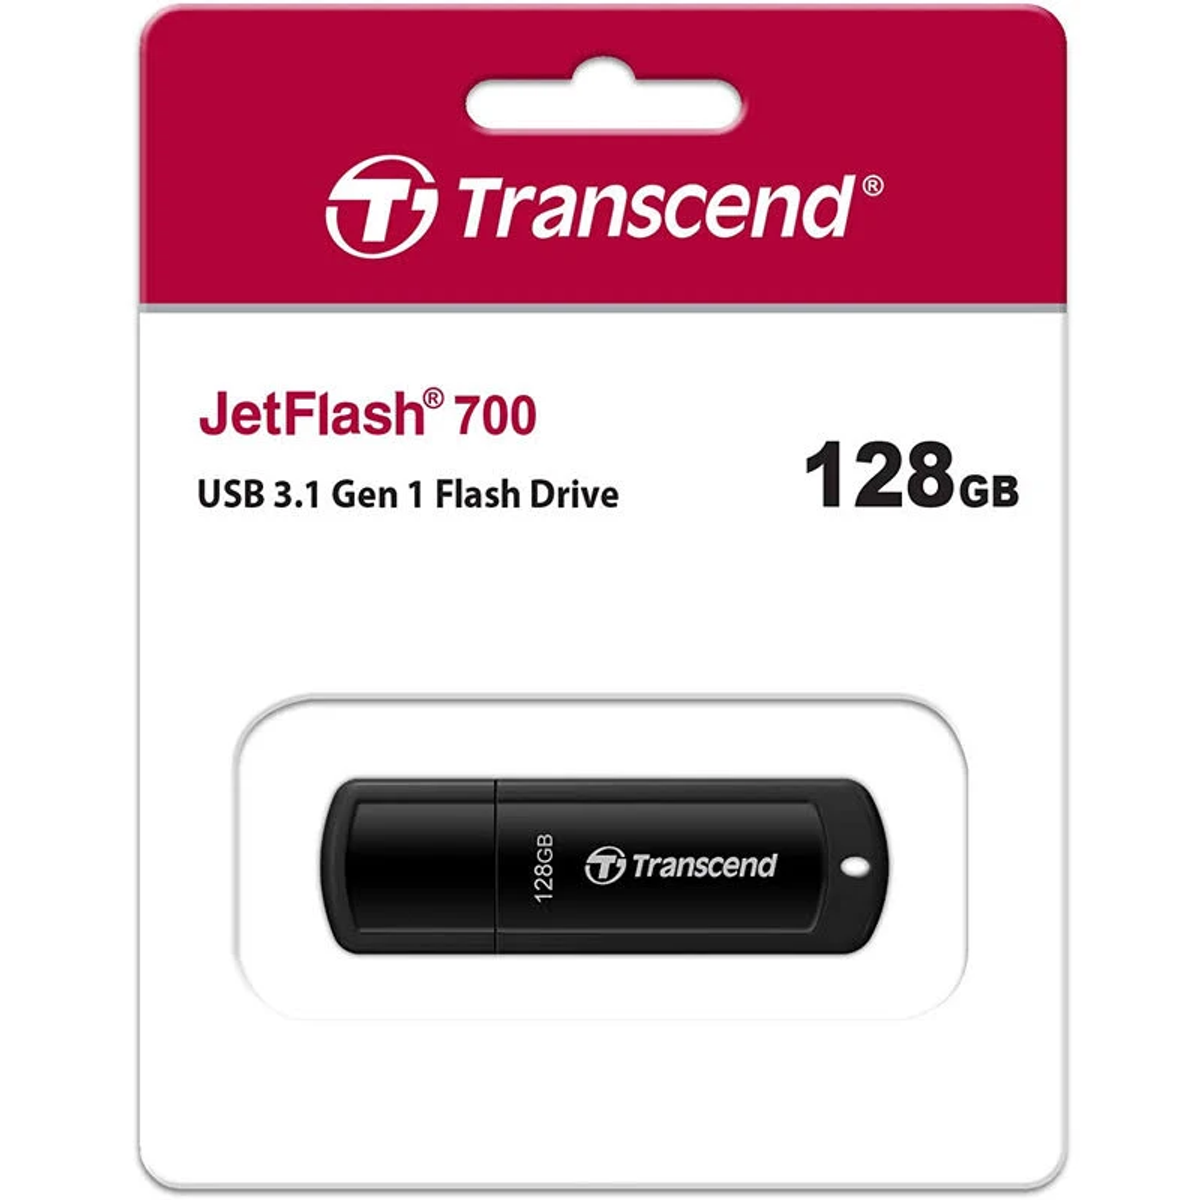 TRANSCEND JetFlash (Schwarz, USB-Flash-Laufwerk 128 GB) 700